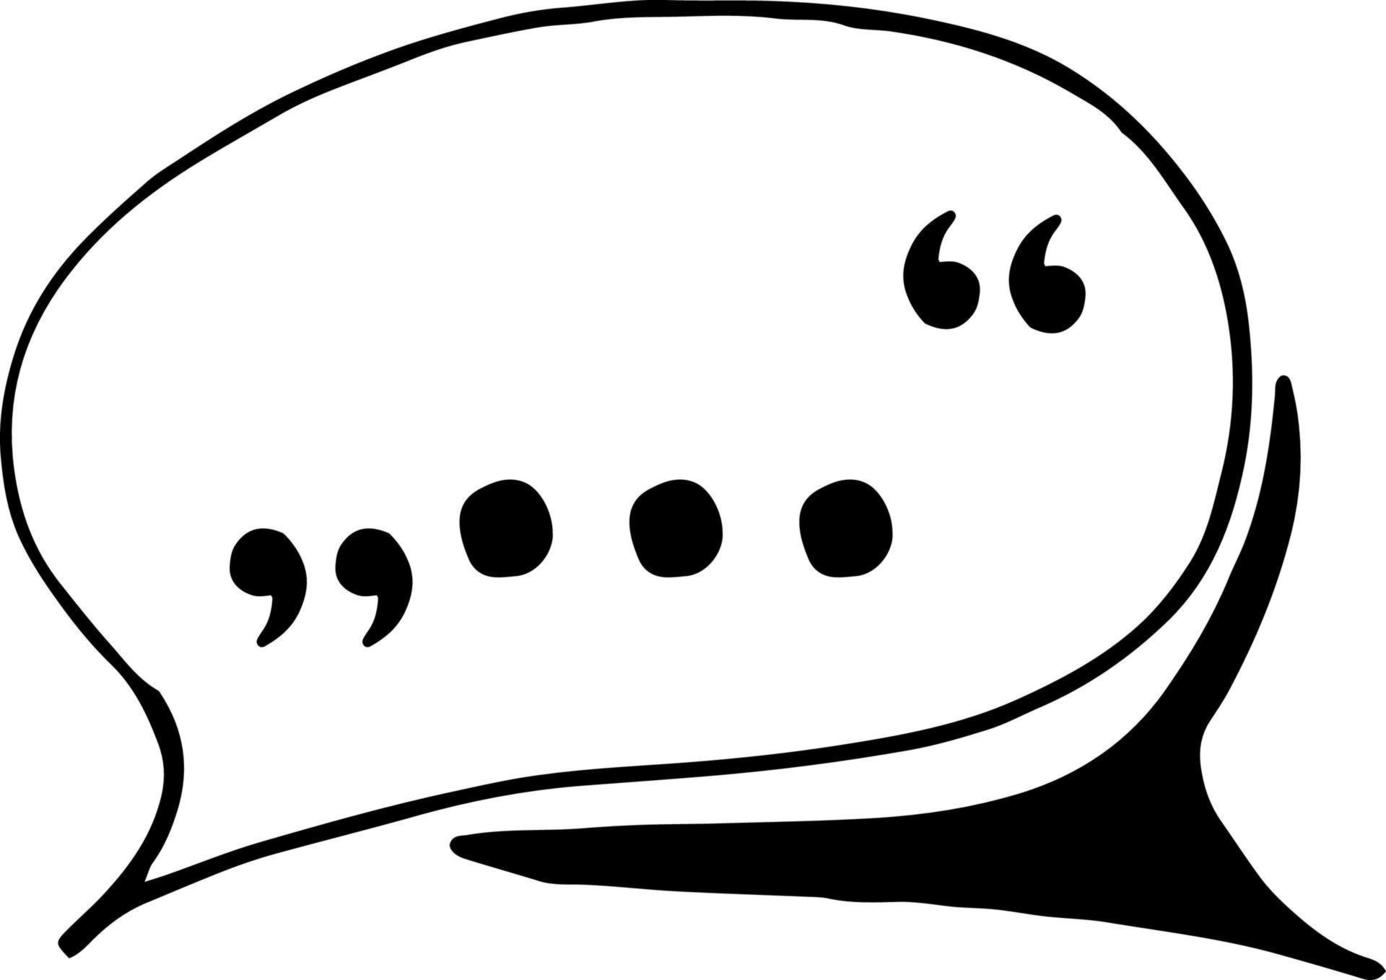 nuvem de ícone de discursos, adesivo. esboço estilo de doodle desenhado de mão. minimalismo, monocromático. conversa, comunicação, bate-papo símbolo blogging vetor